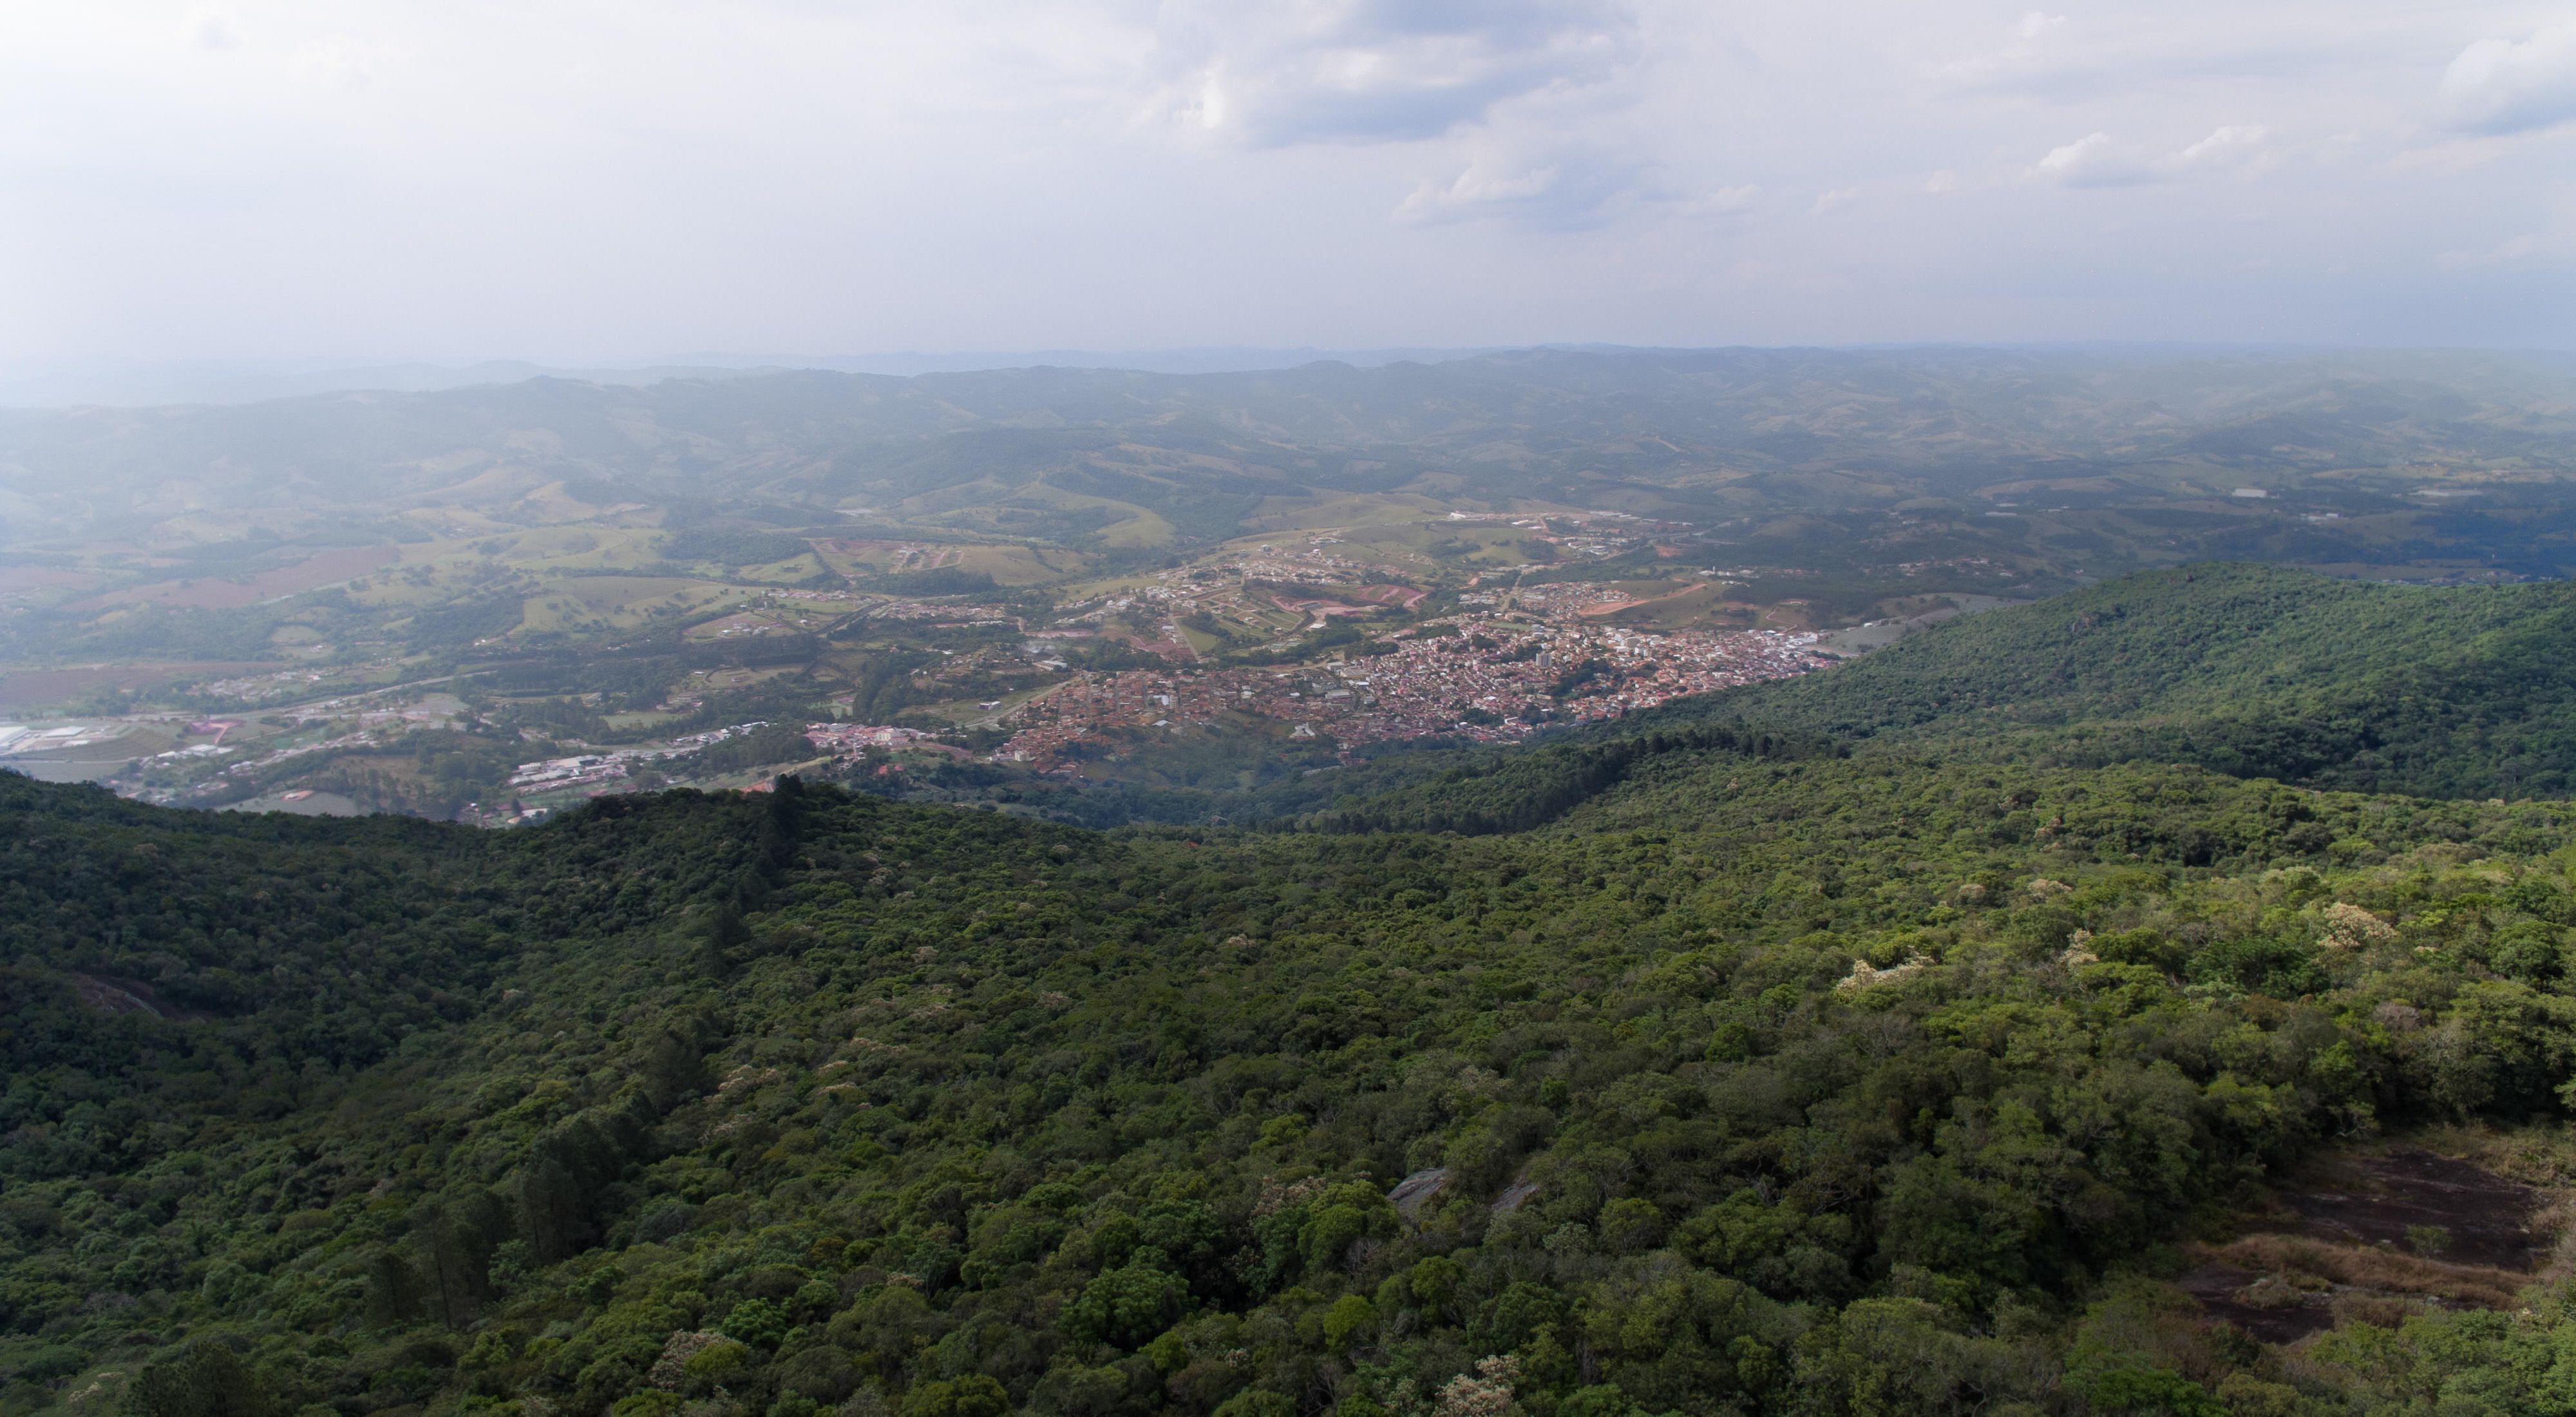 Vista aérea da cidade de Extrema-MG, um município referência na restauração de áreas degradadas para proteção da bacia hidrográfica.